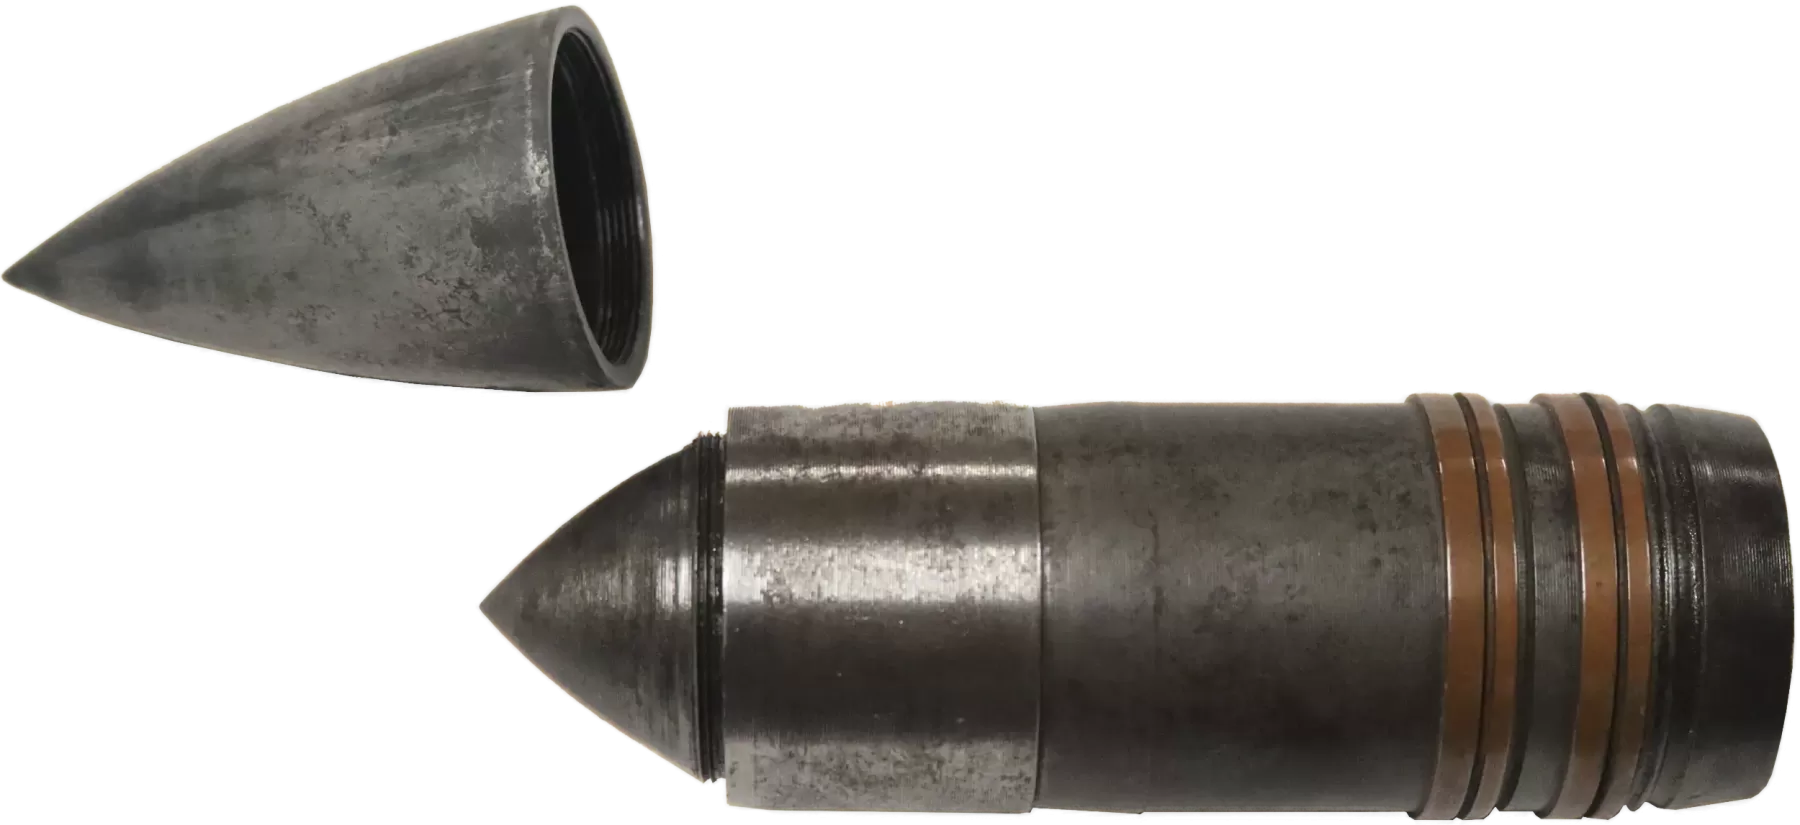 Munitions de 47 mm utilisées dans la fortification